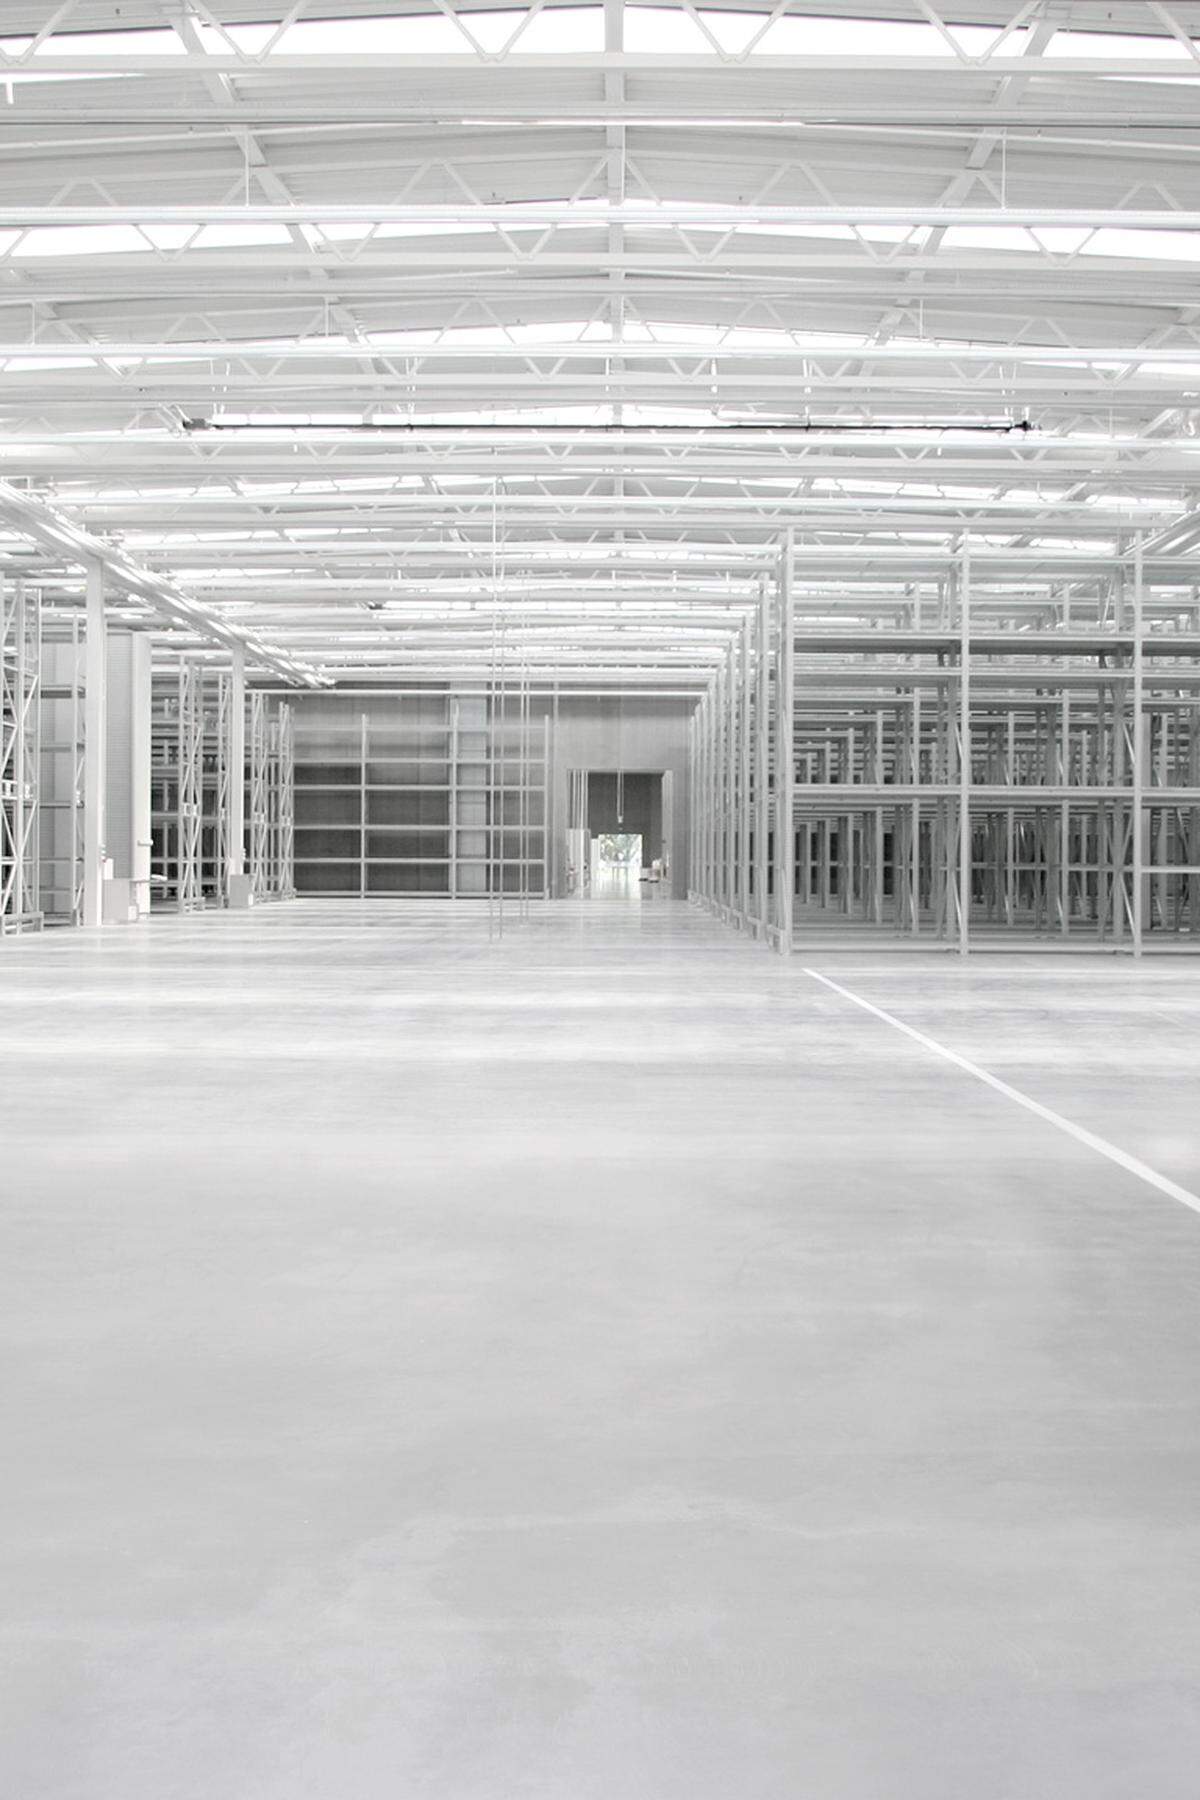 SANAA Architekten aus Japan verwandelten eine Produktionshalle in eine weiße Wolke.